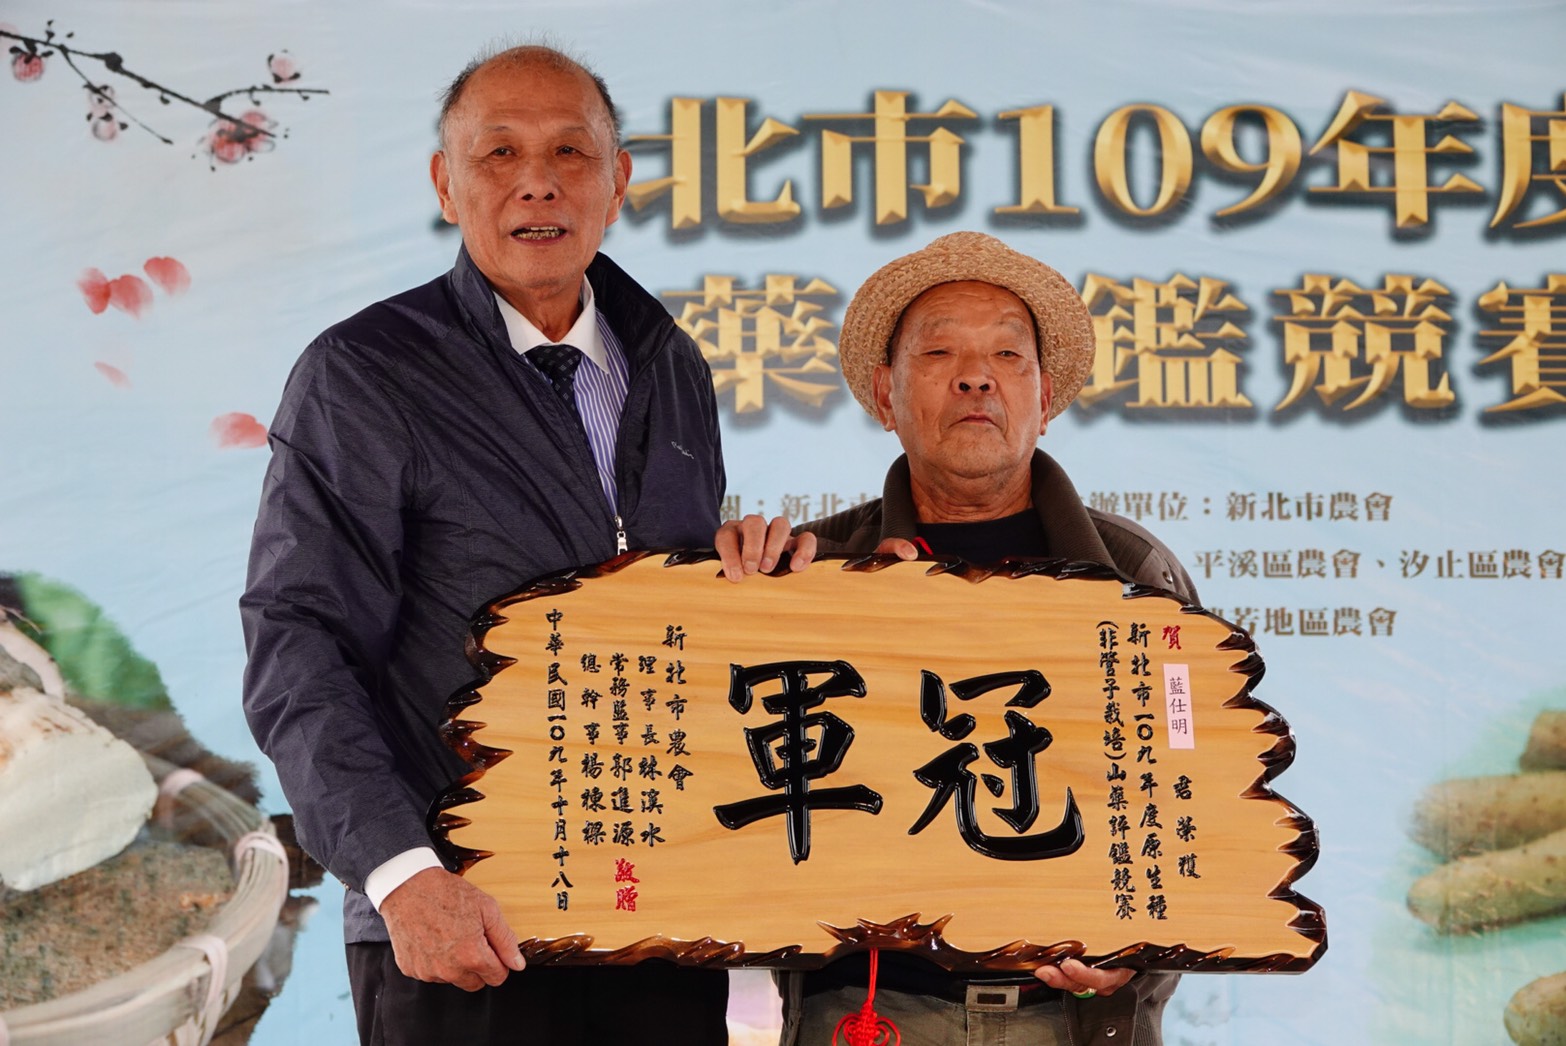 中華民國全國農會常務監事白添枝(左)與原生種(非穴管栽培)冠軍代領人藍澤清(右)